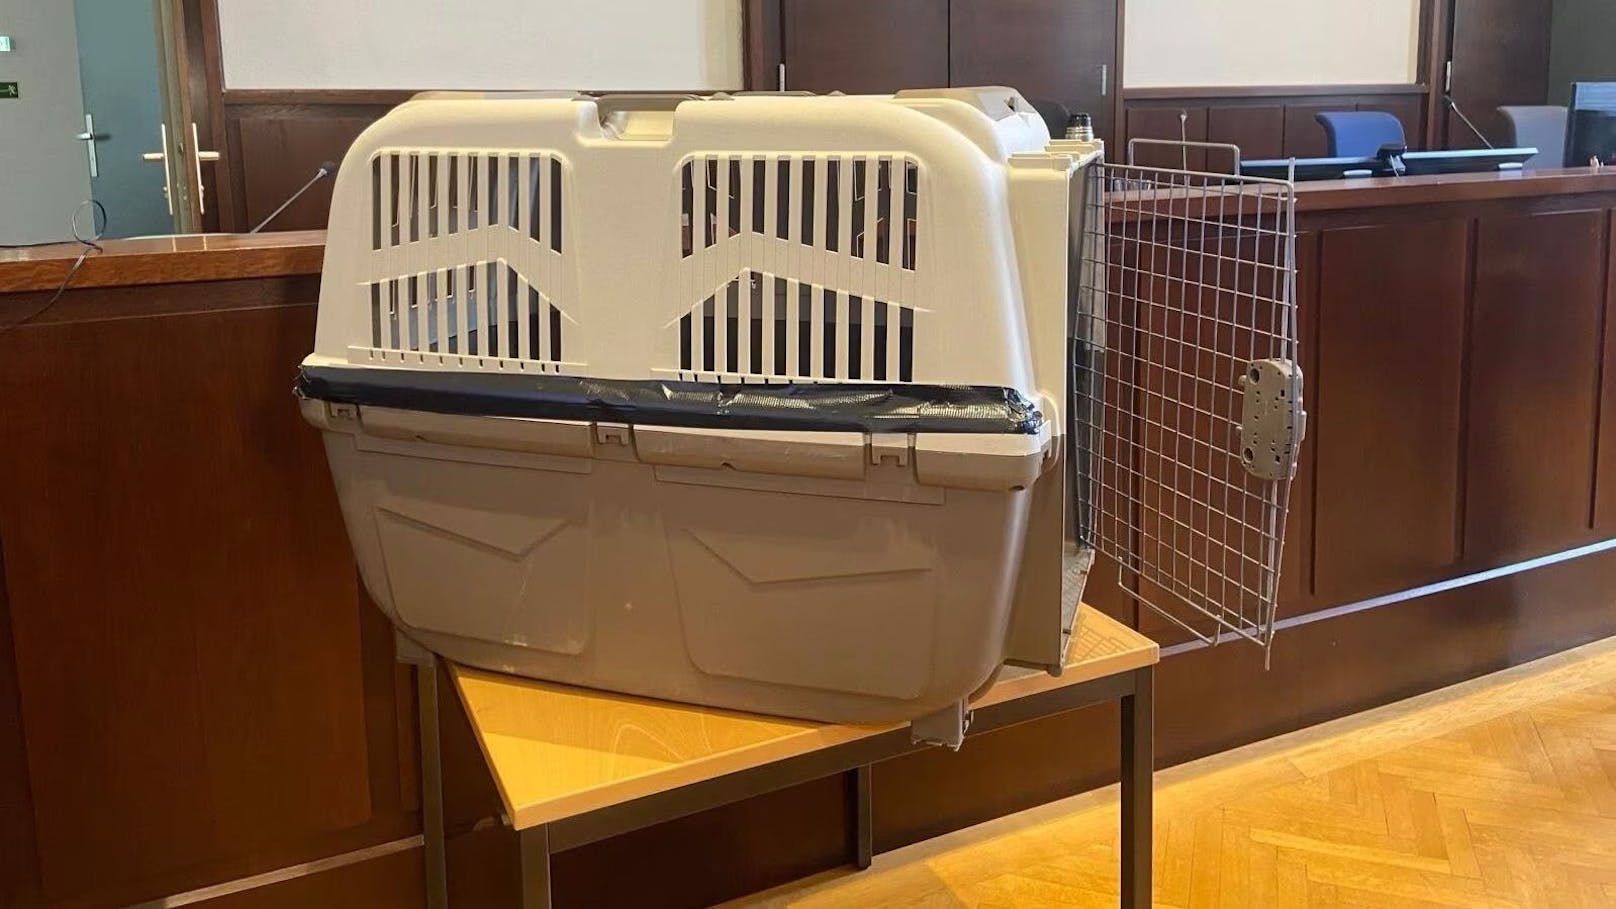 Die Hundebox wurde im Gerichtssaal aufgestellt: Der Bub muss unvorstellbare Qualen erlitten haben.